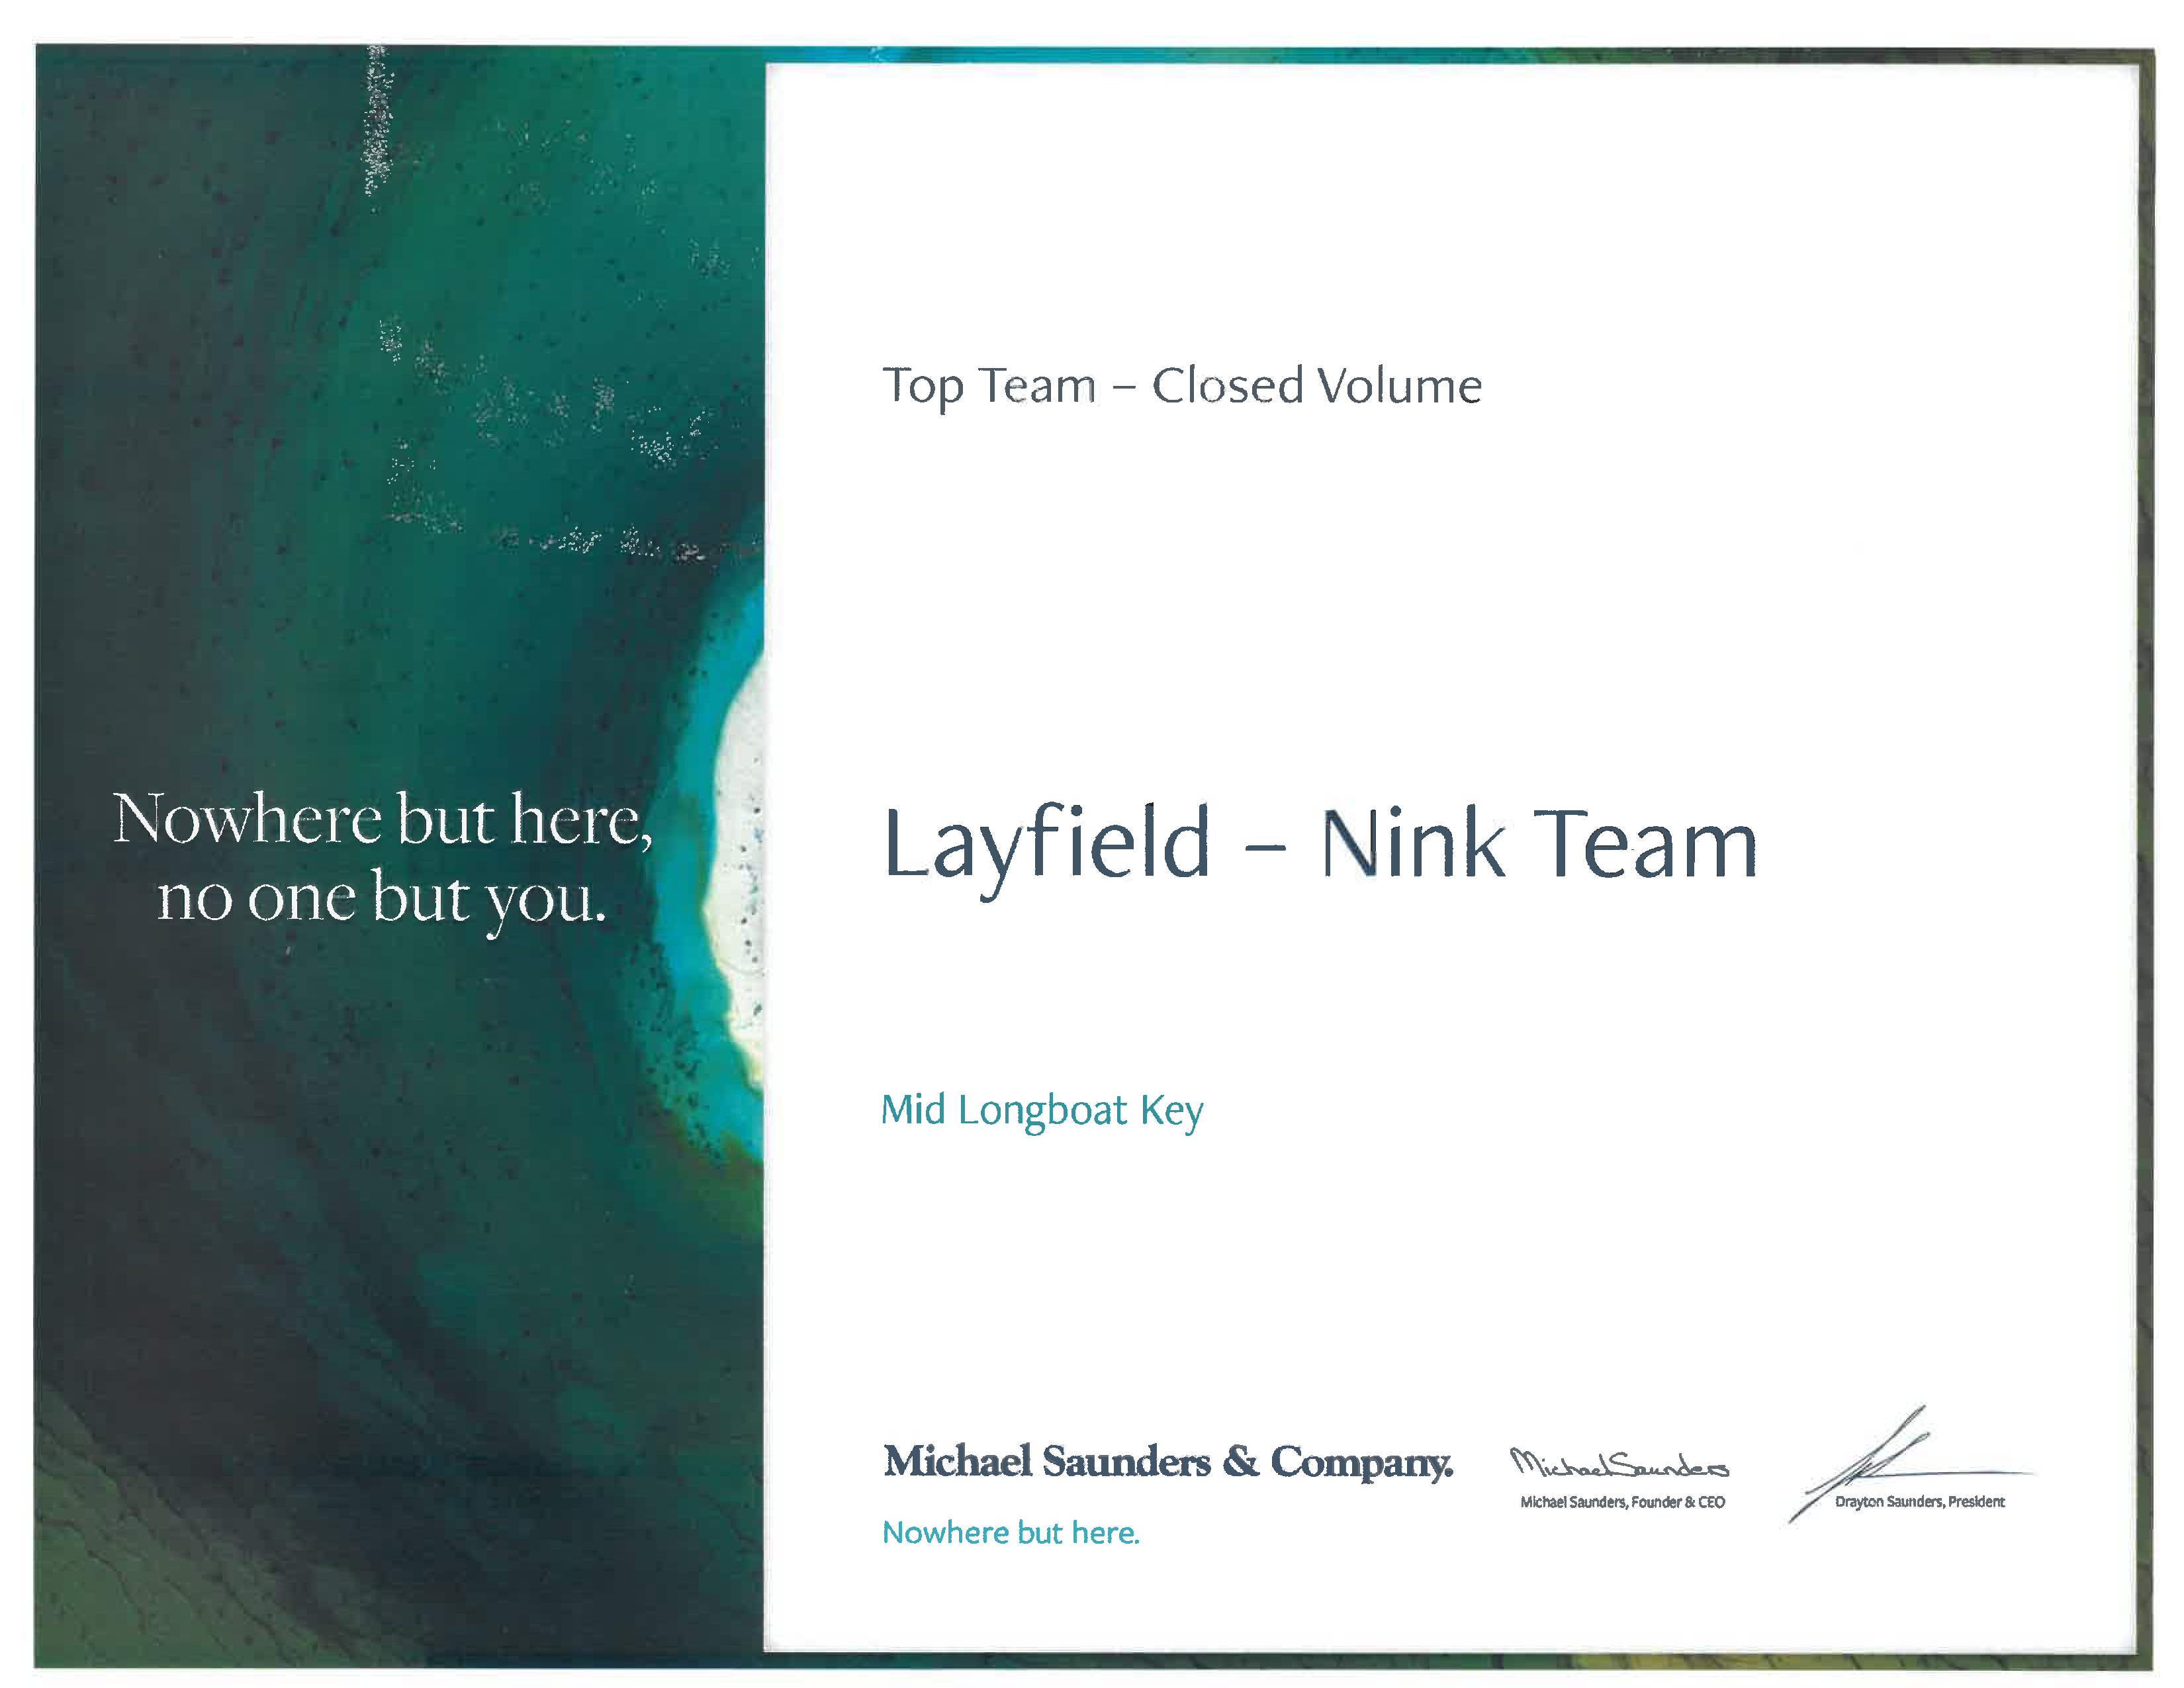 Layfield-Nink Team Top Team Closed Volume Award 2021